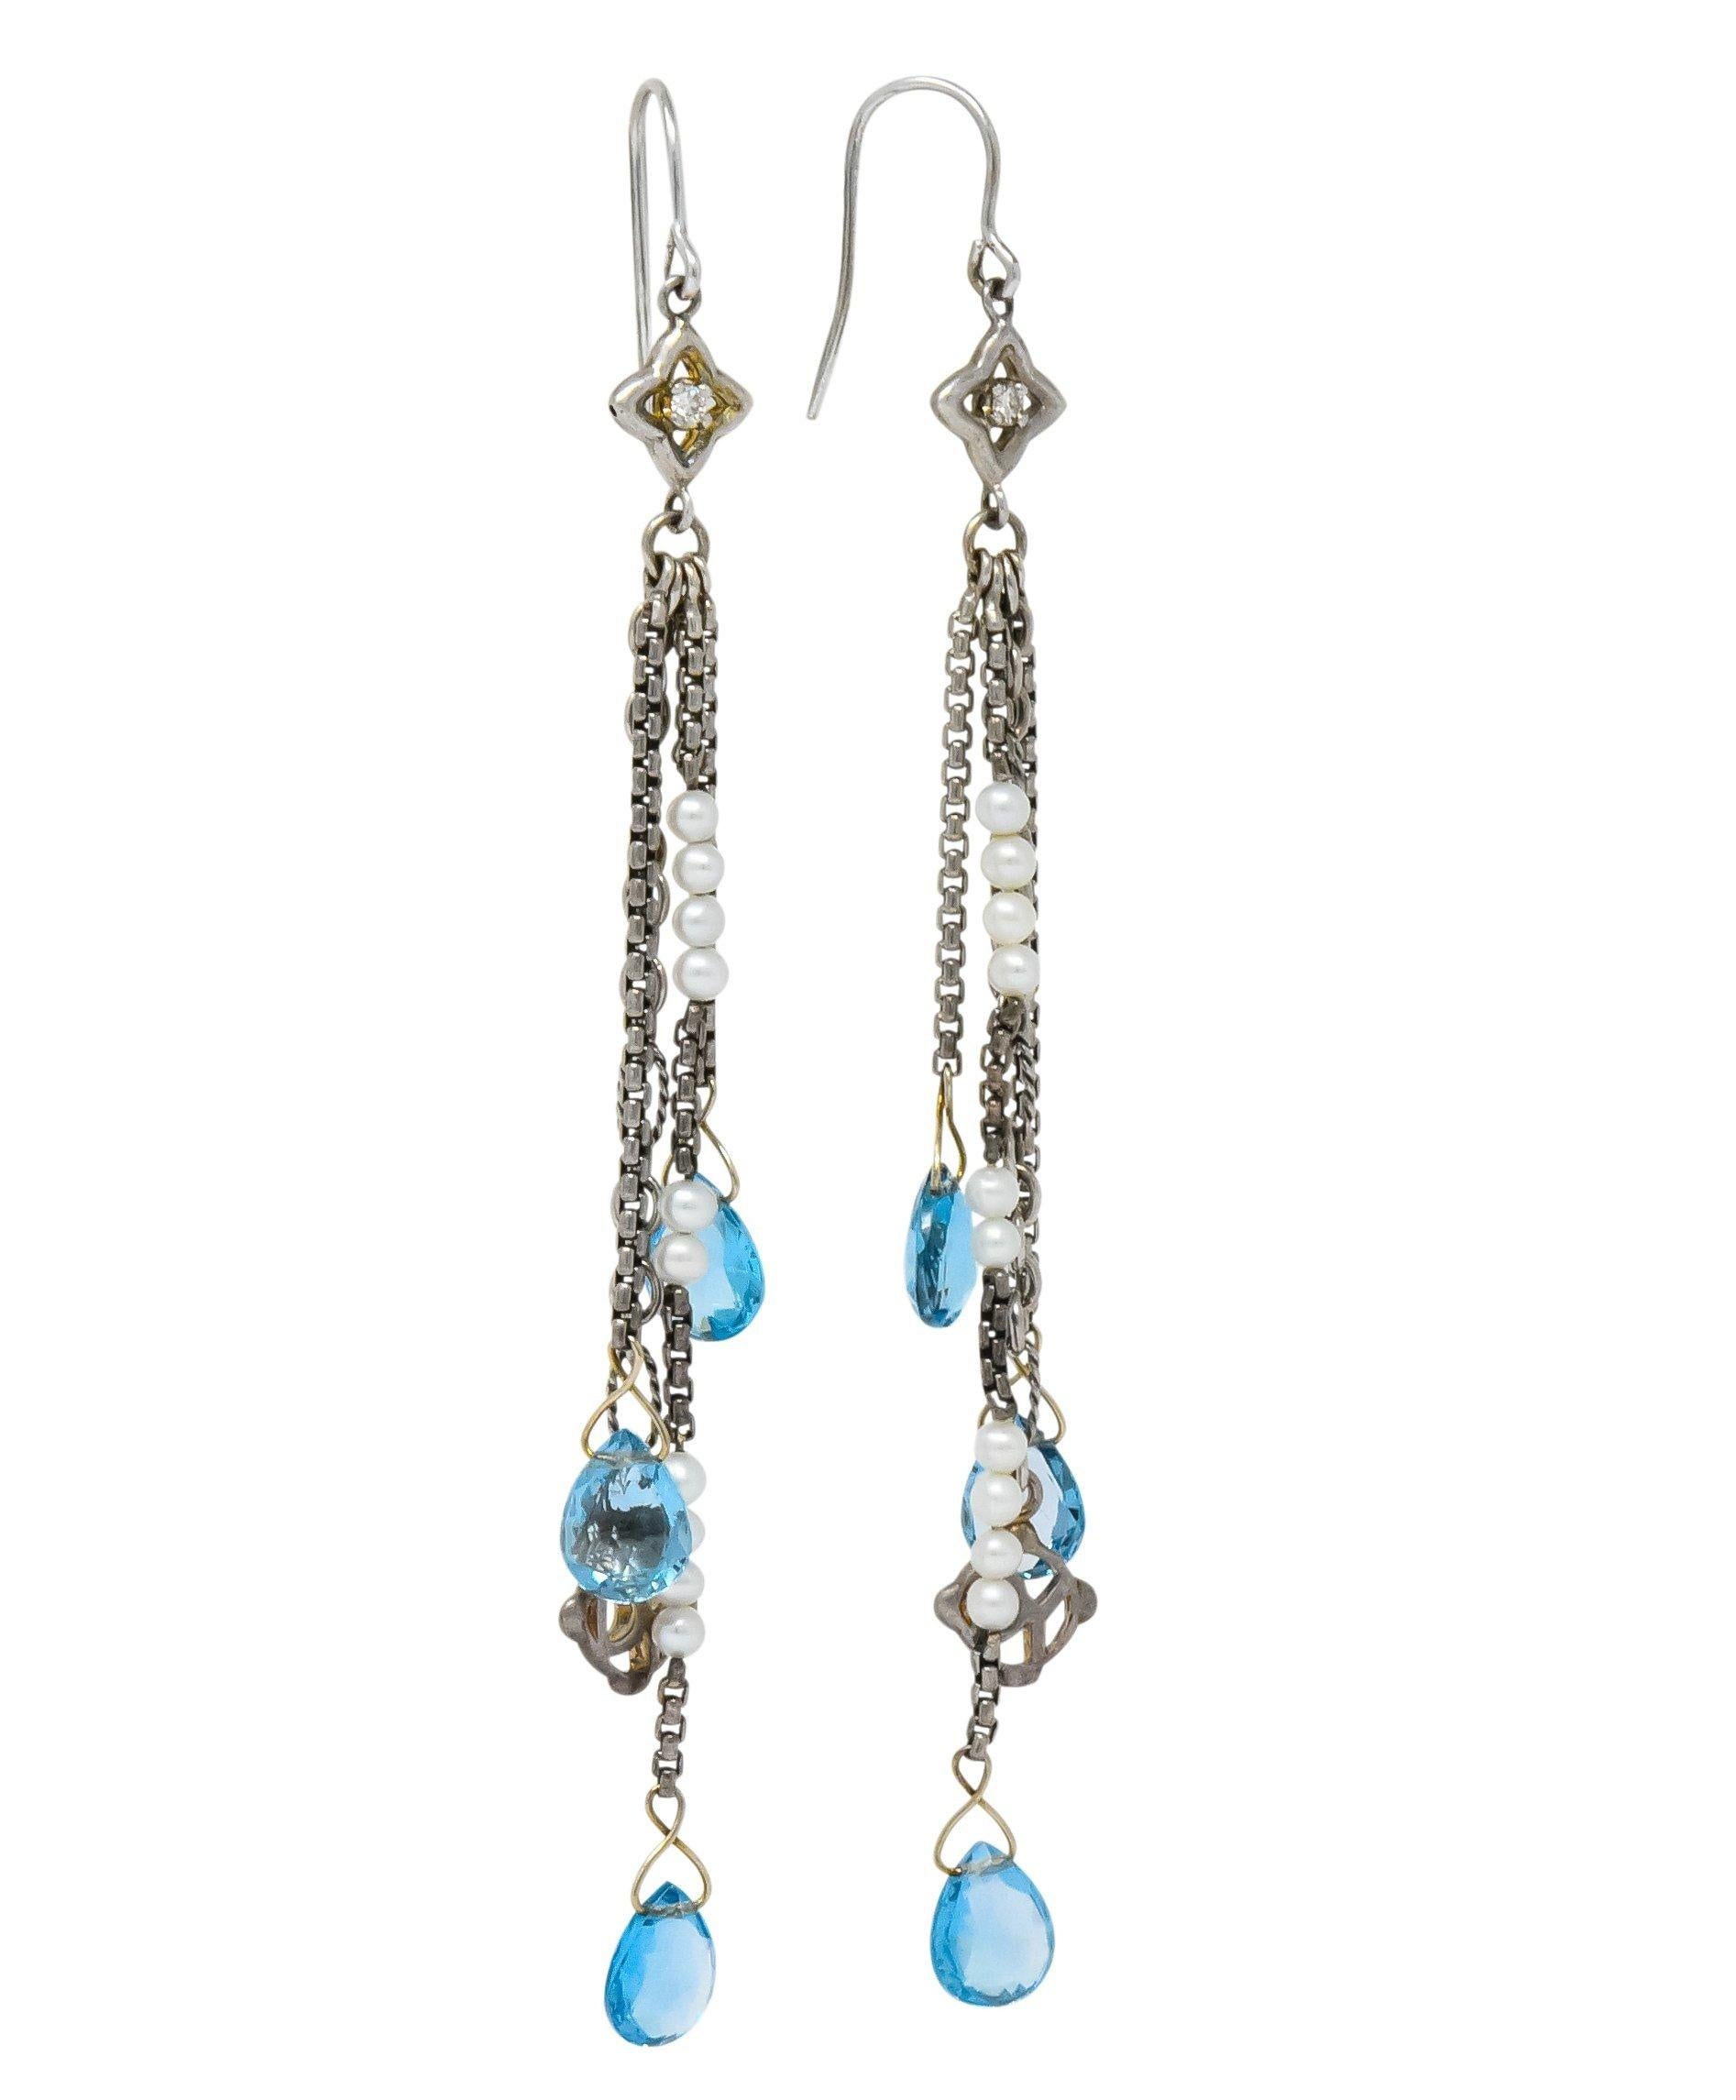 david yurman earrings blue topaz